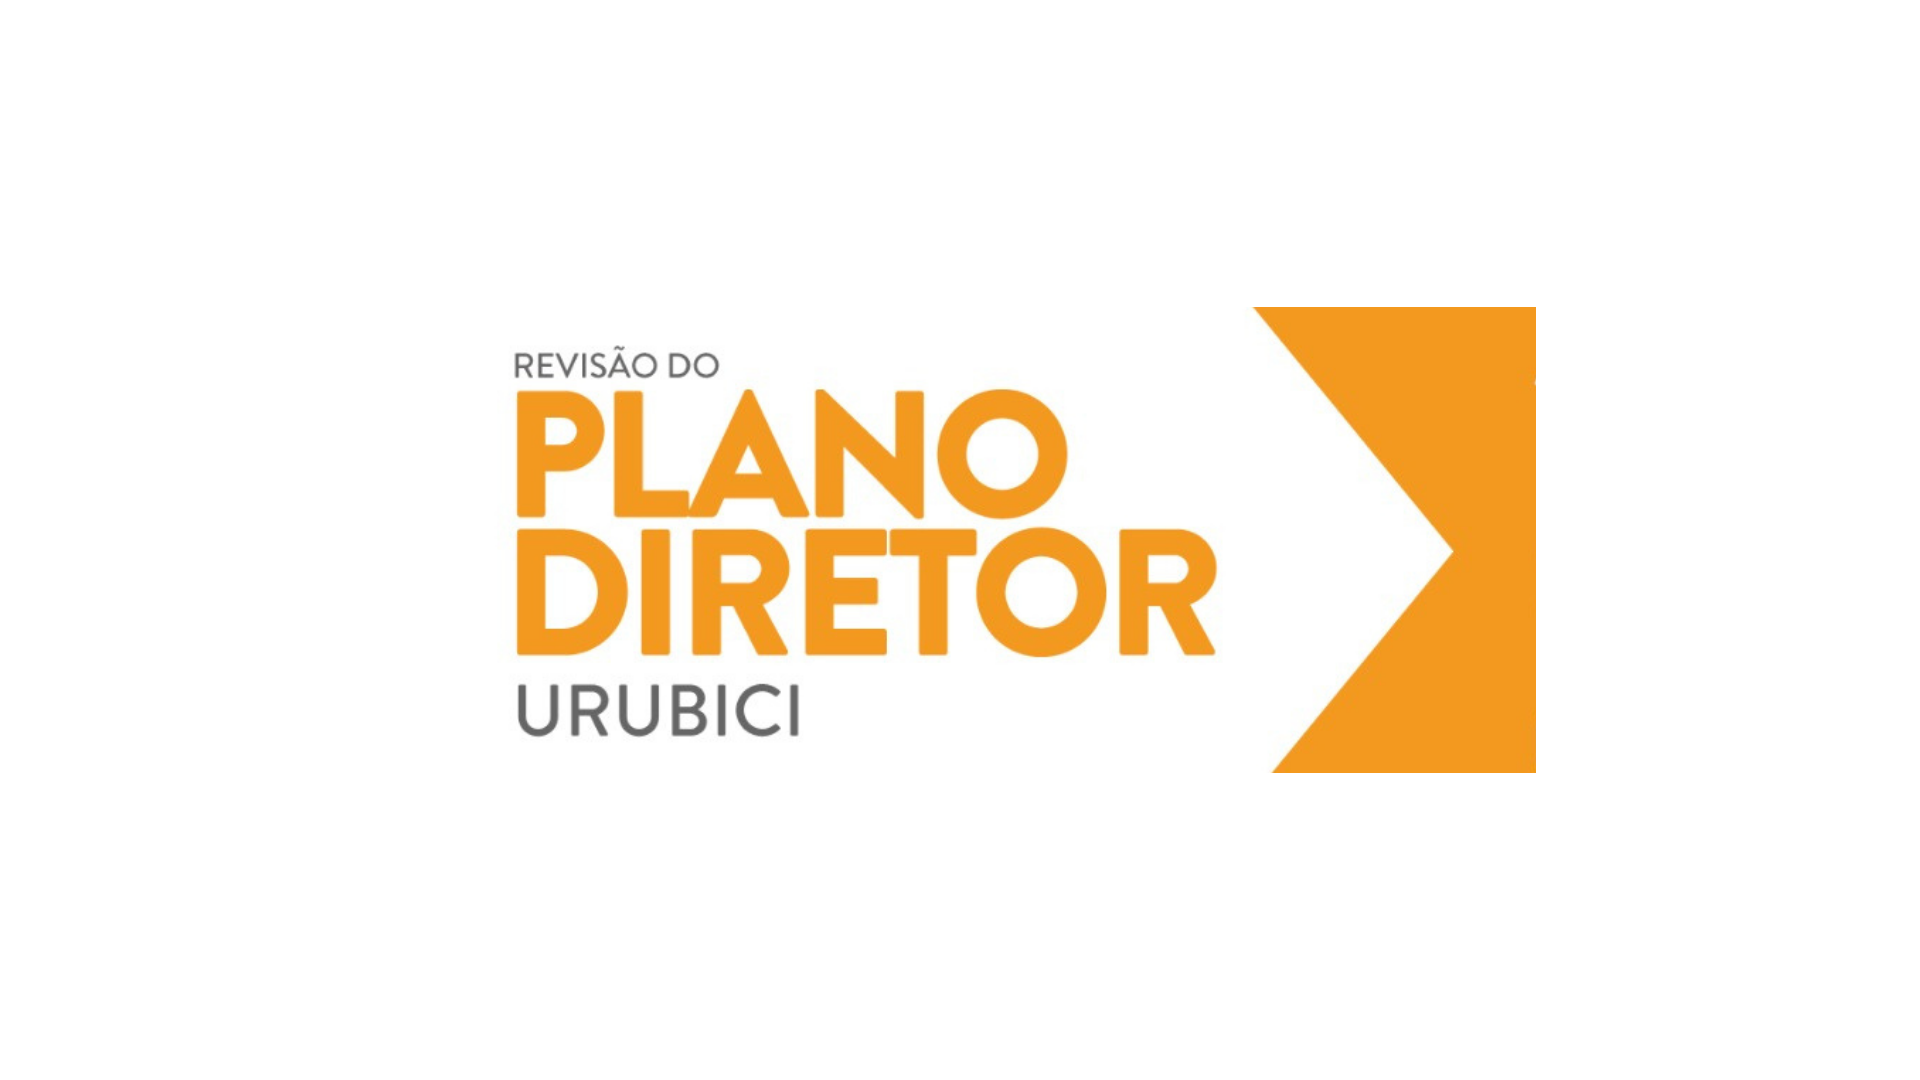 Prefeitura Municipal de Urubici | Plano Diretor - Audiência Pública